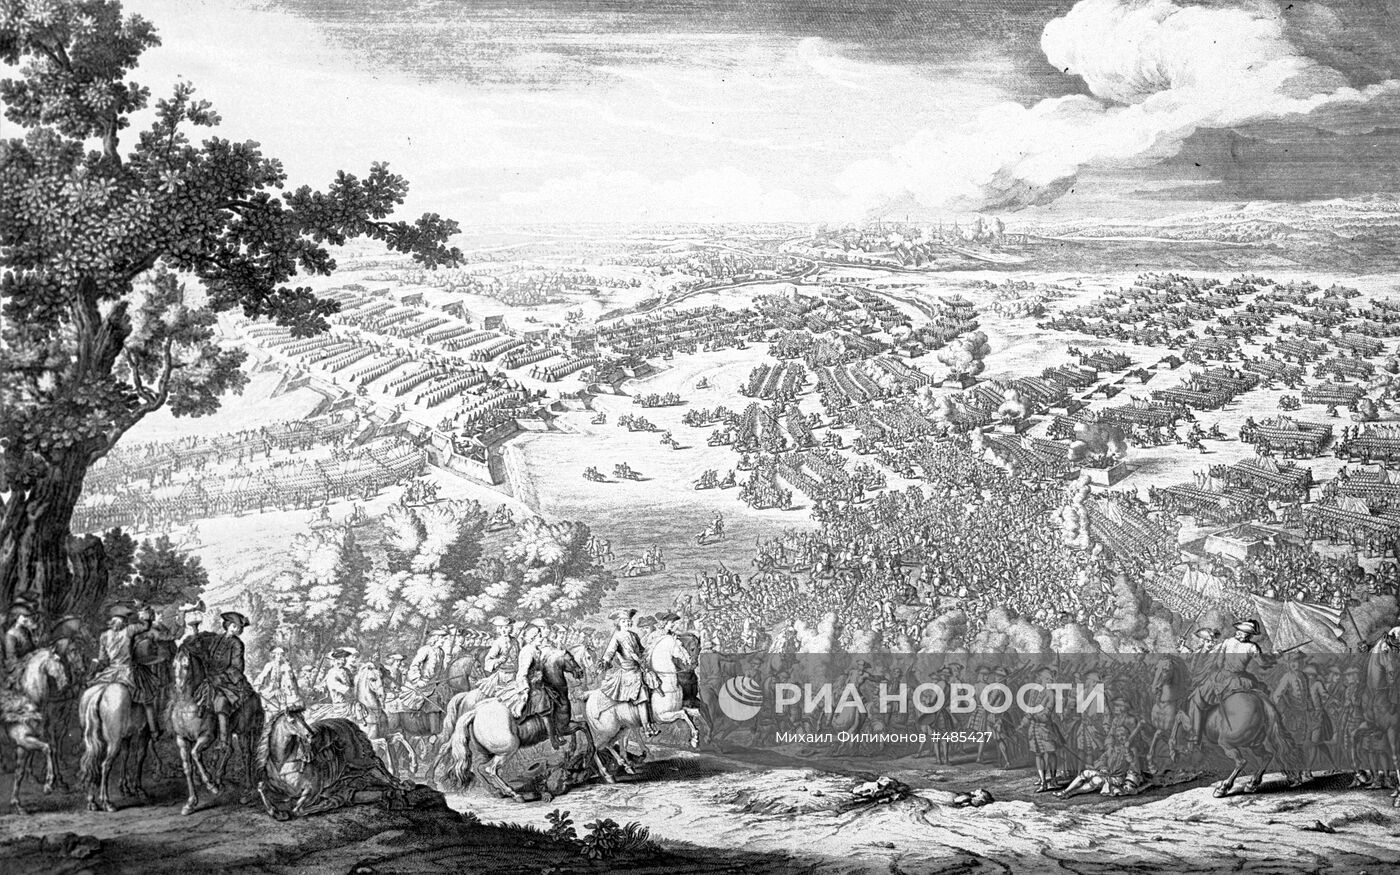 Репродукция гравюры "Полтавская битва 27 июня 1709 года"